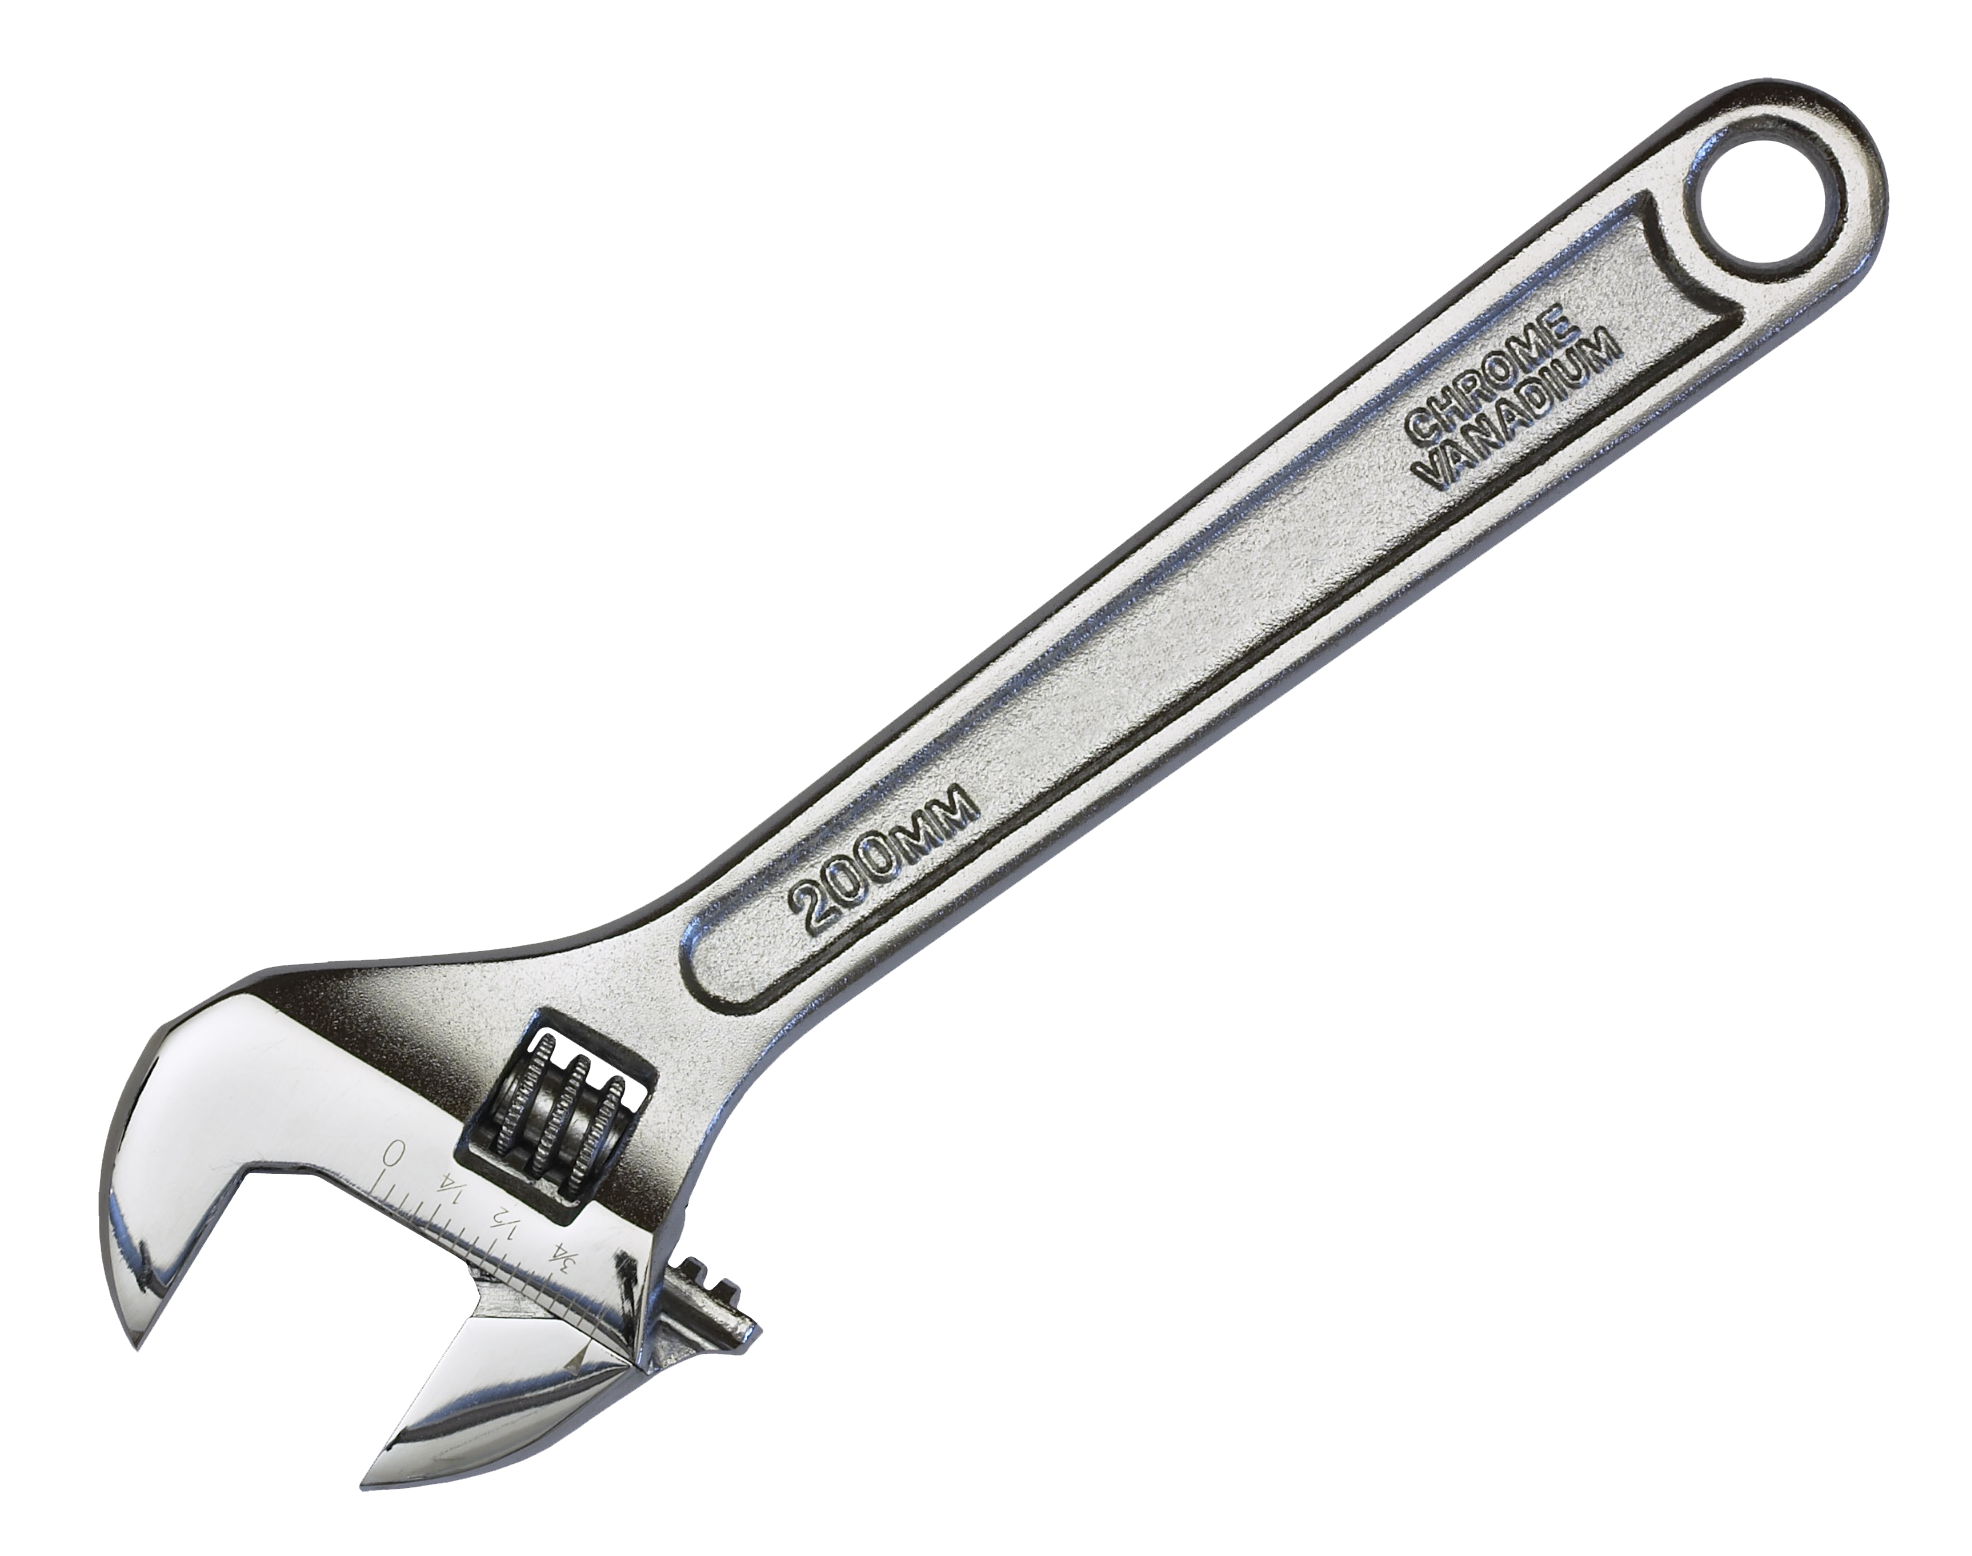 Wrench Adjustable Spanner Tool PNG Transparent pngteam.com